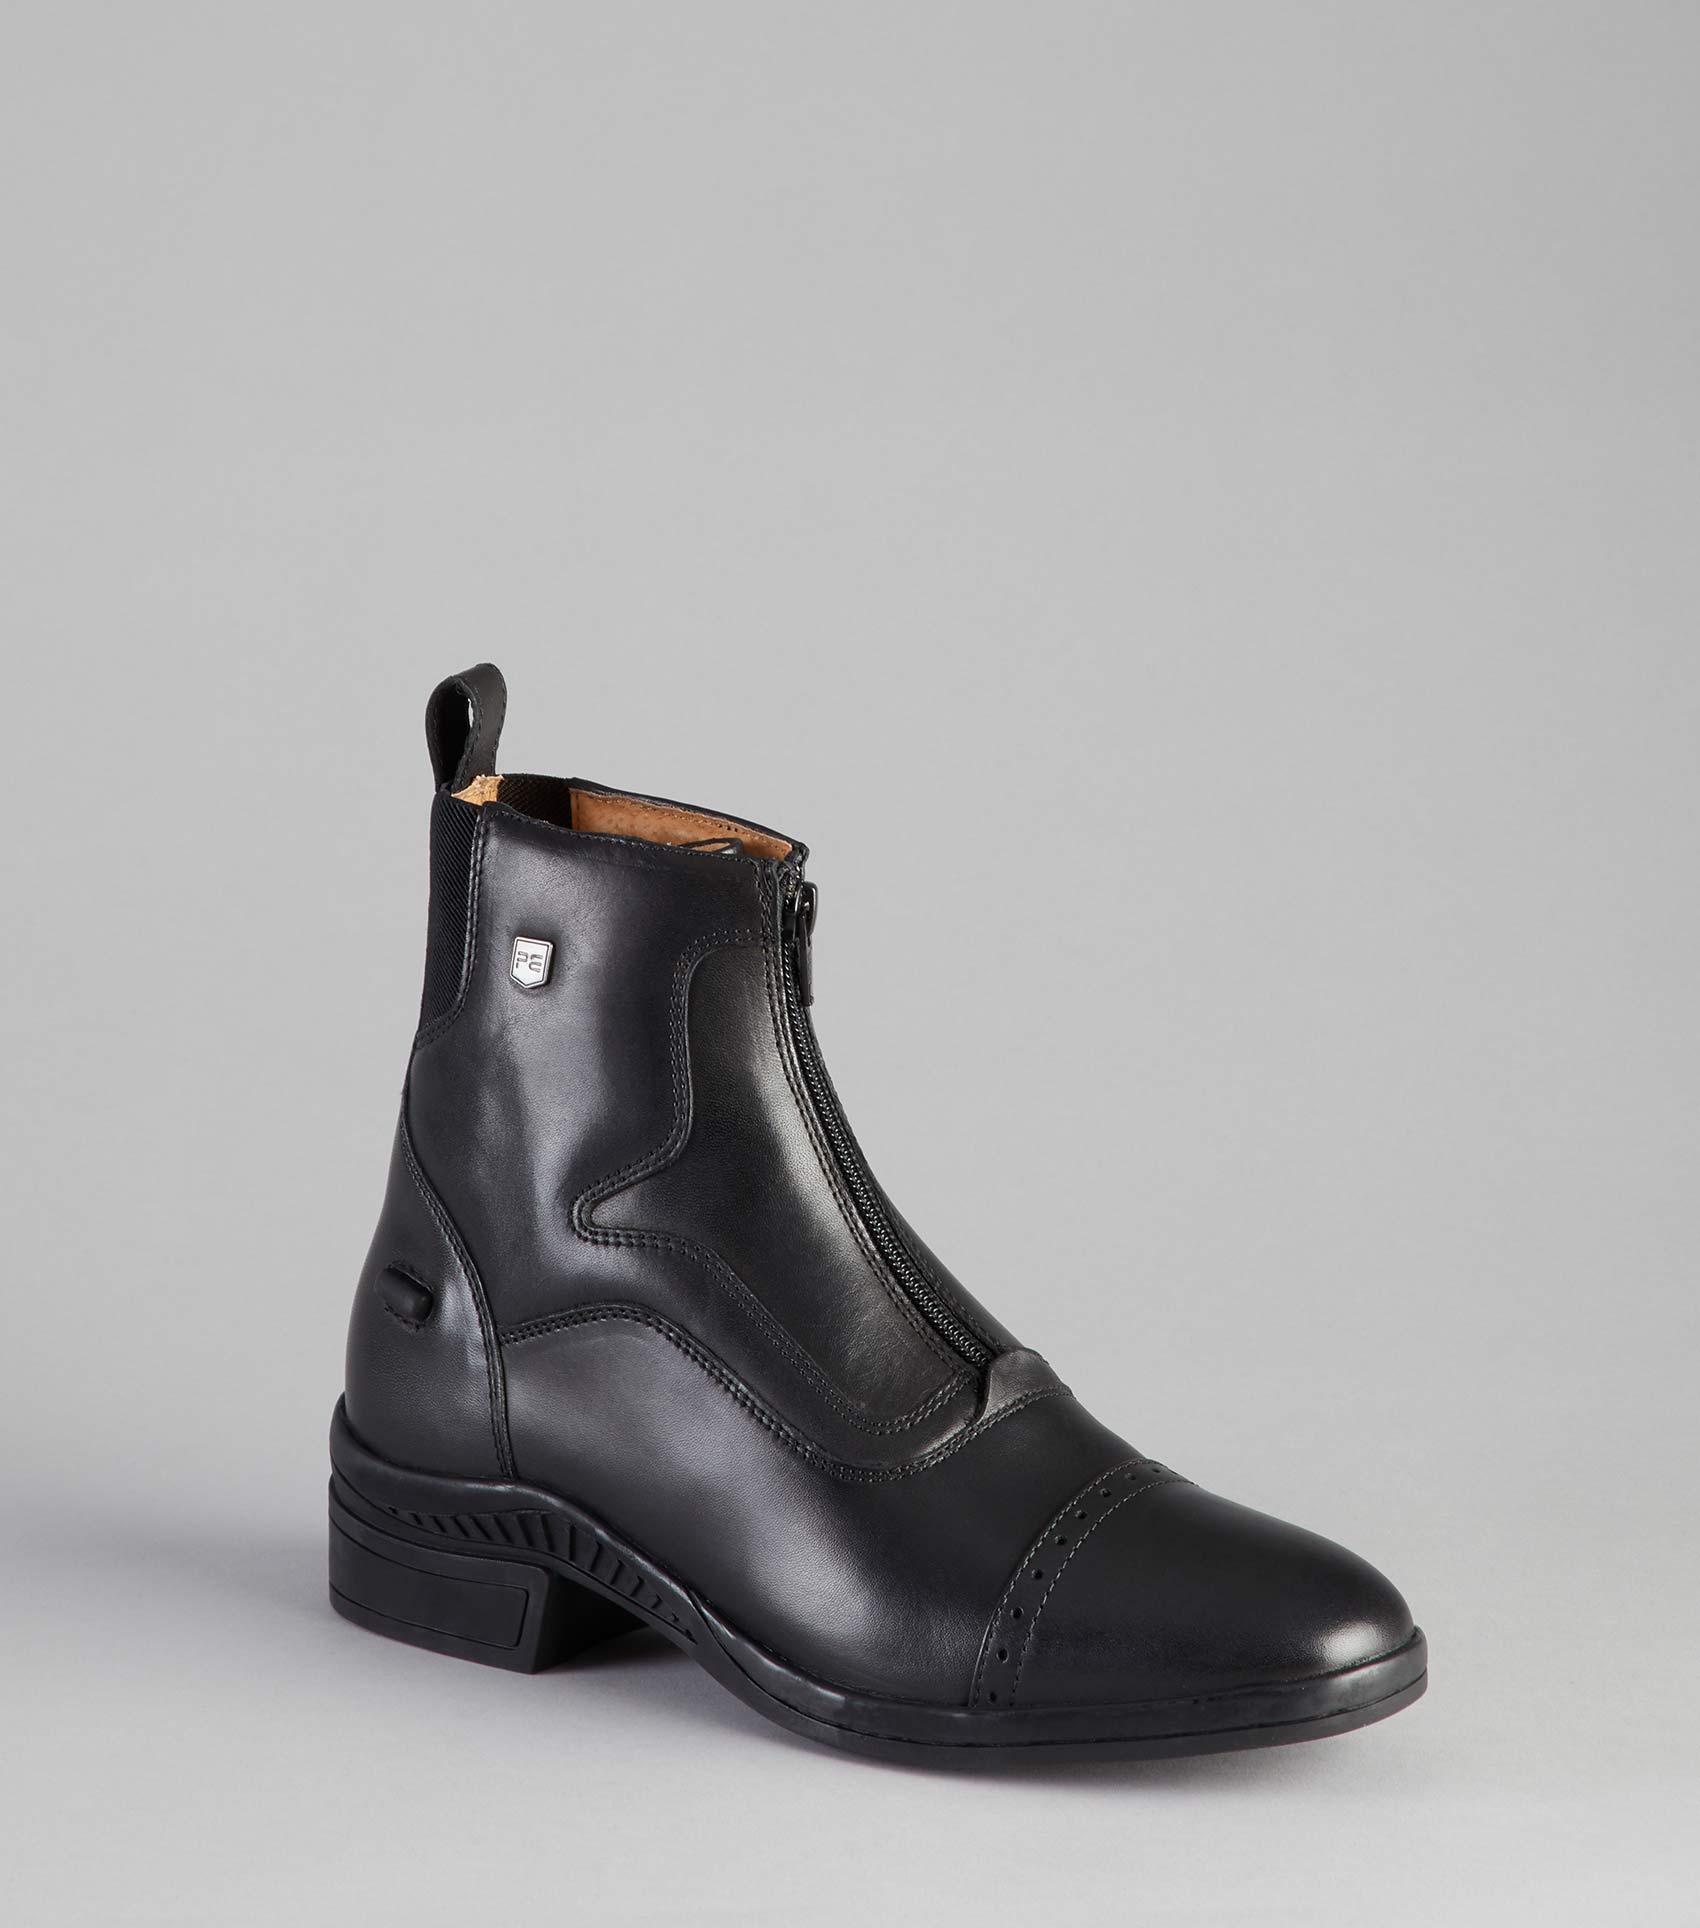 Description:Loxley Ladies Leather Paddock/Riding Boots_Colour:Black_Position:1